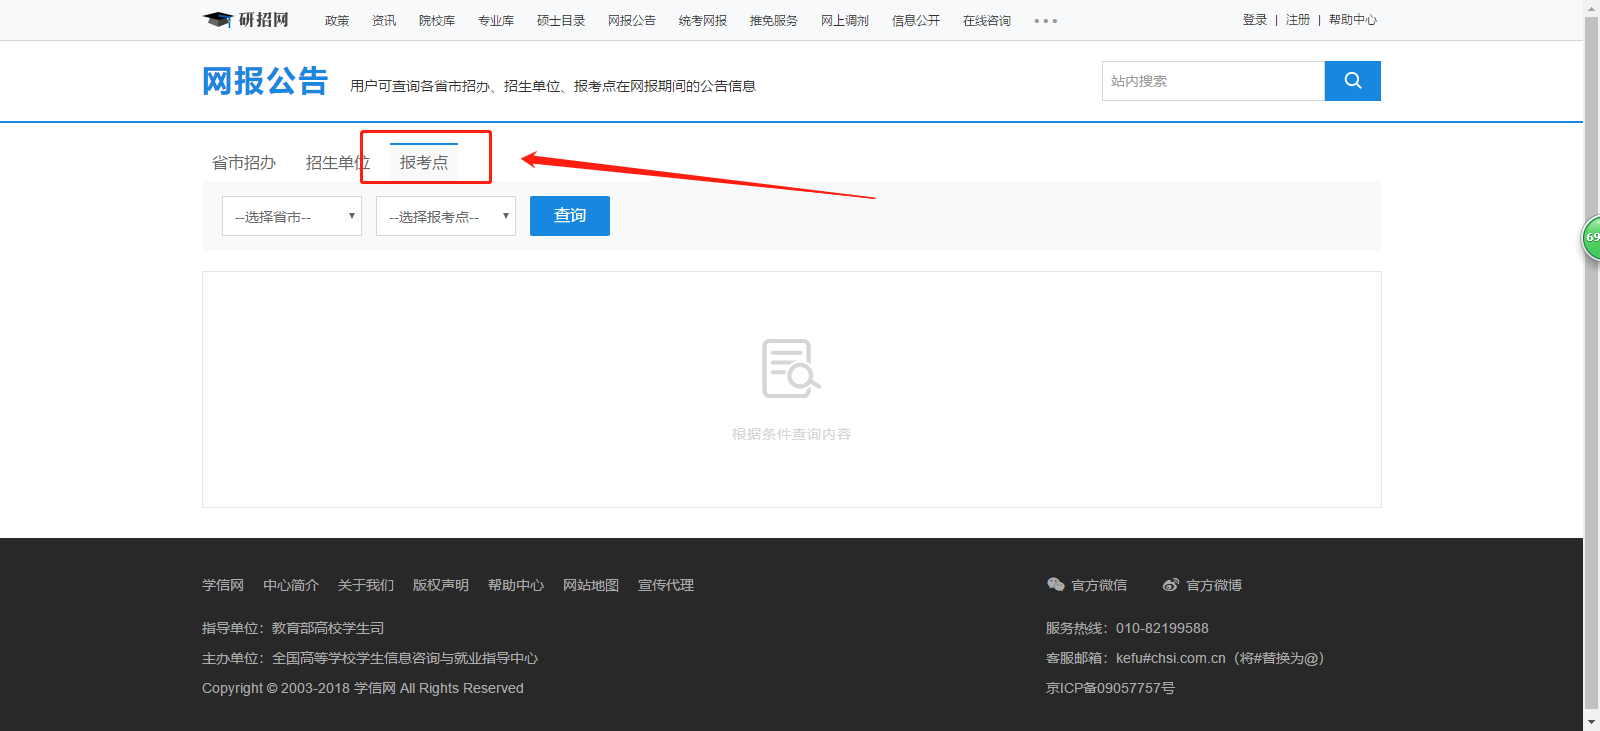 中国研究生招生信息网（即研招网）网报公告页面